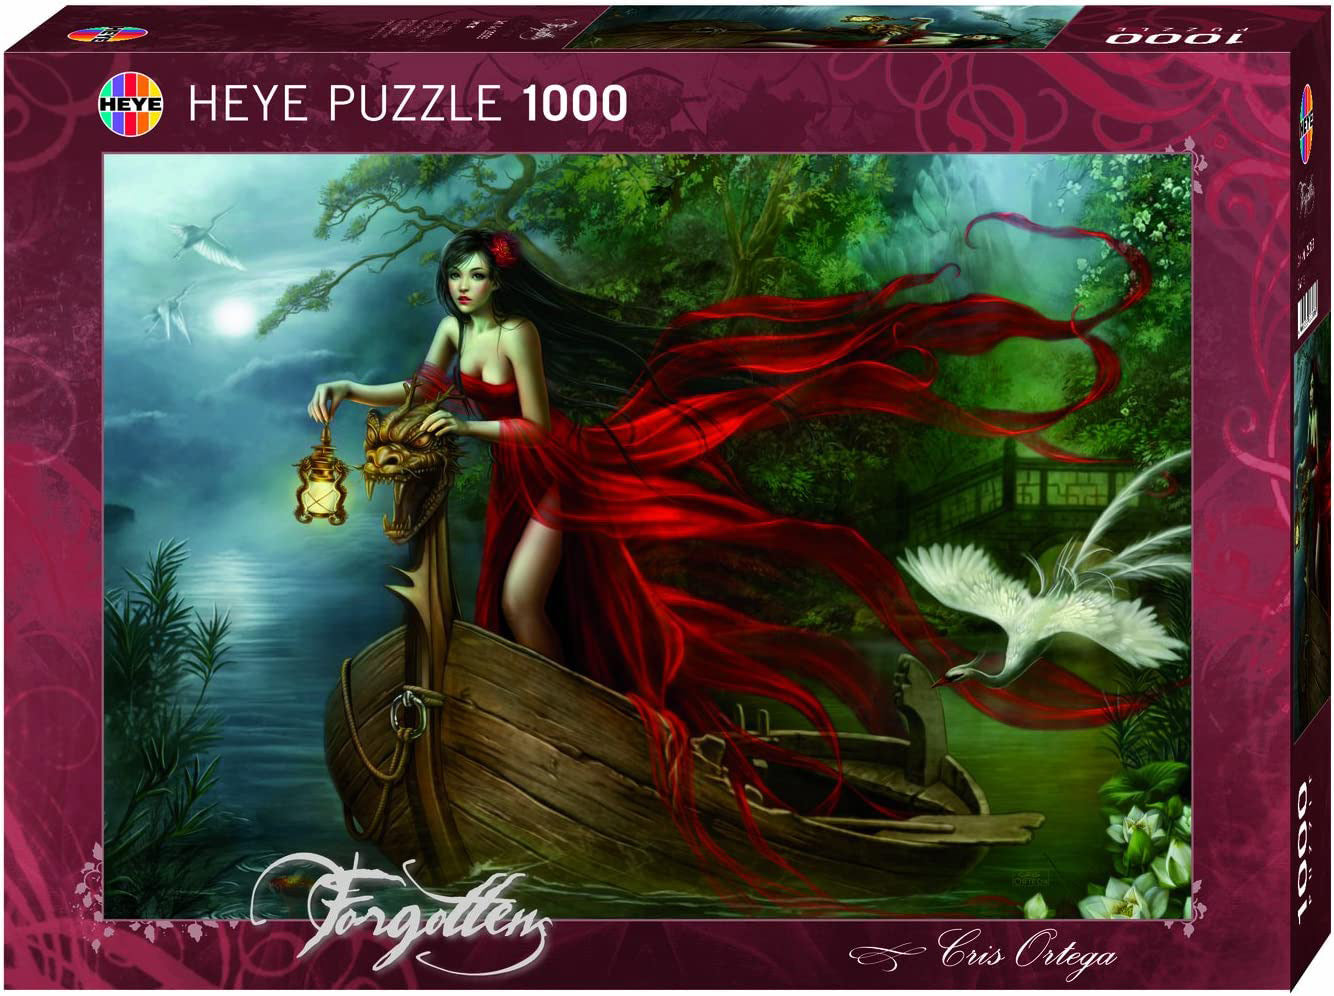 Swans by Cris Ortega, 1000 Piece Puzzle